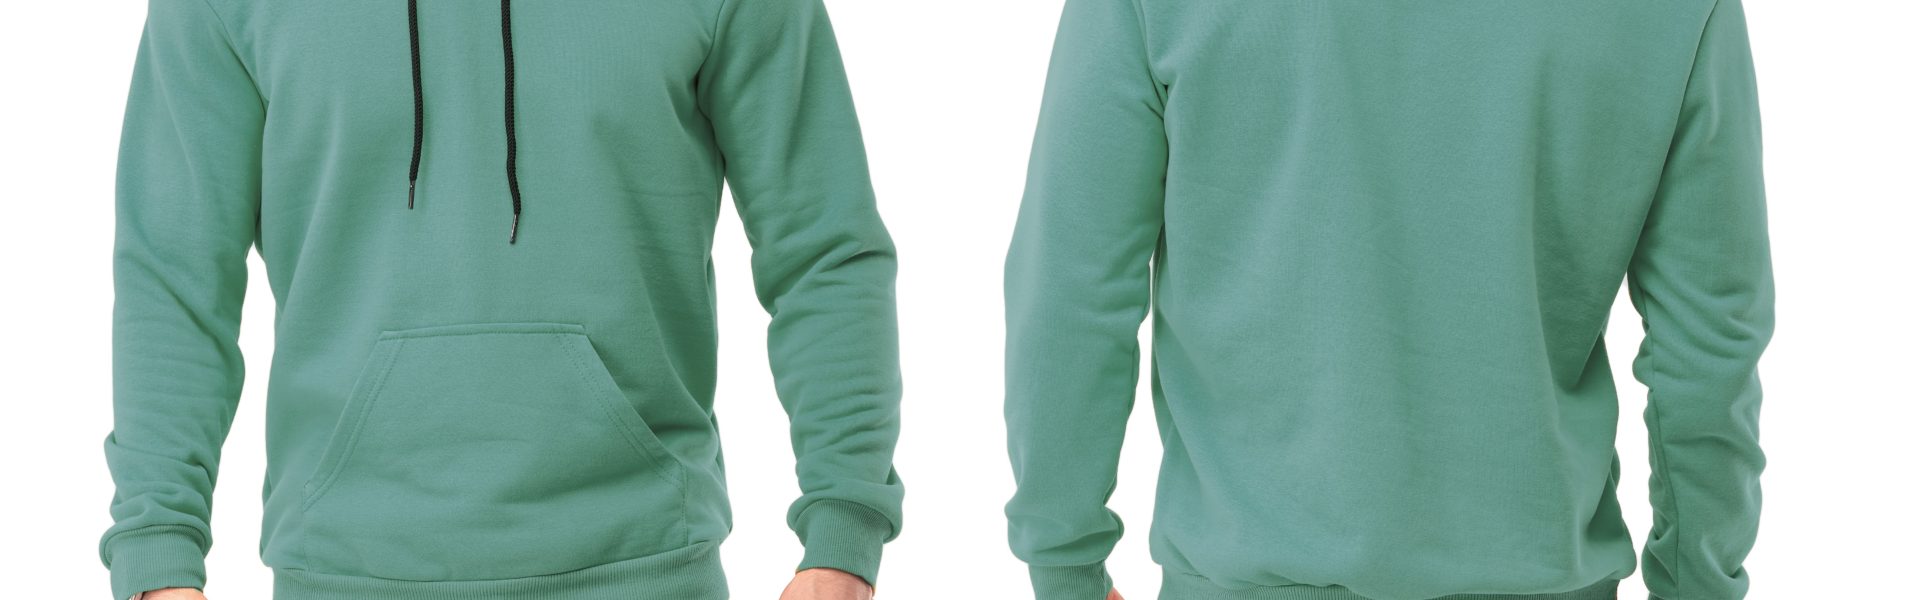 Bedrukken van hoodies en truien voor uw bedrijf